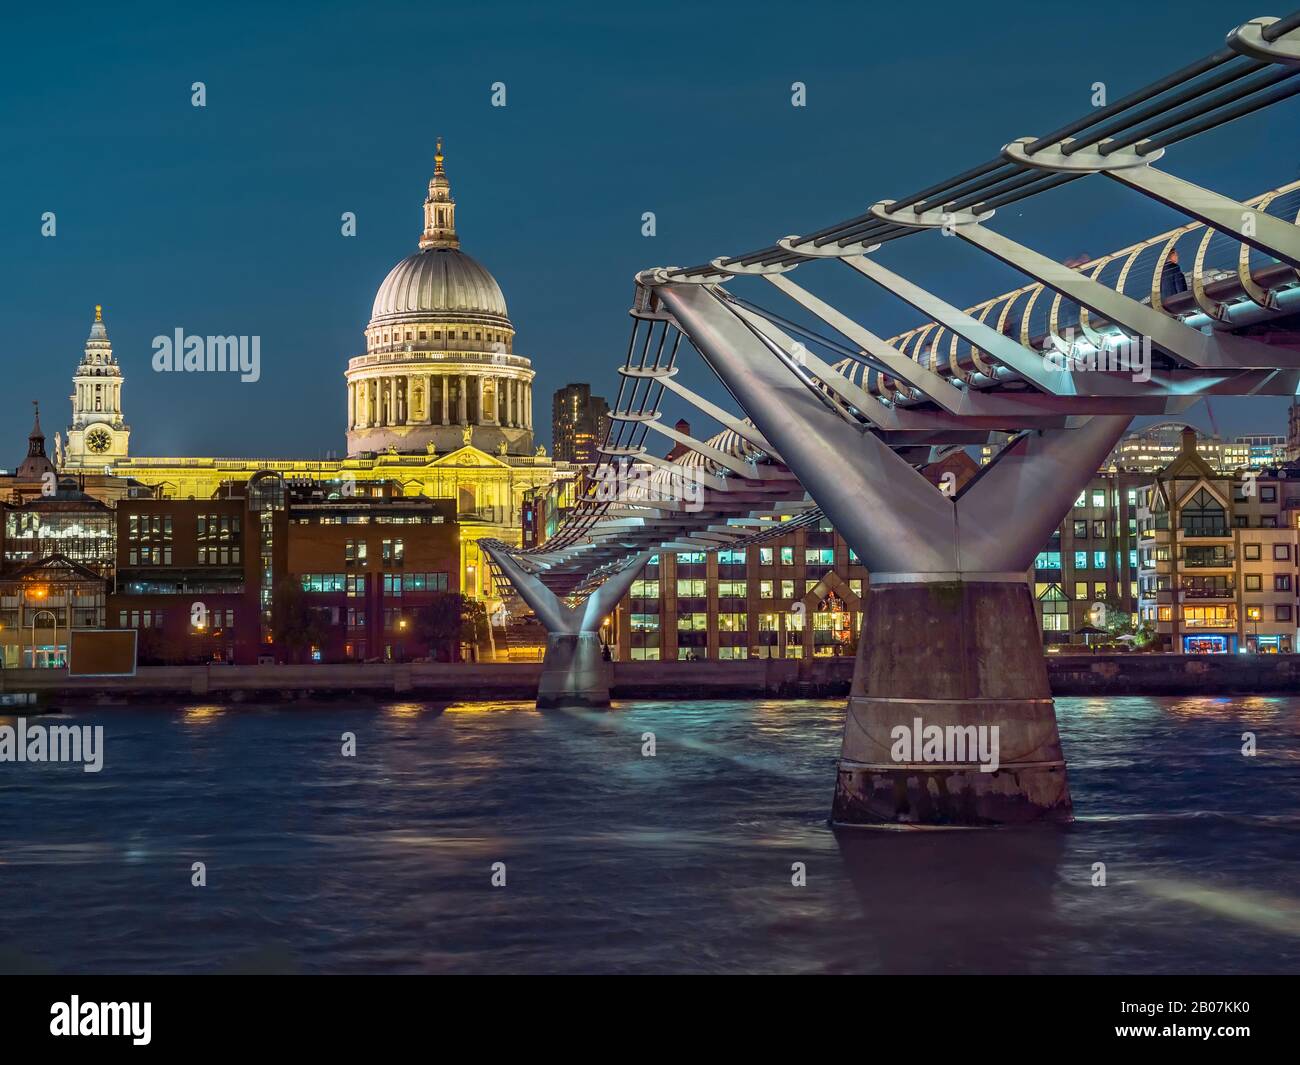 Vue panoramique nocturne sur la Tamise avec pont Millennium et cathédrale Saint-Paul en arrière-plan. Paysage Urbain De Londres, Royaume-Uni Banque D'Images